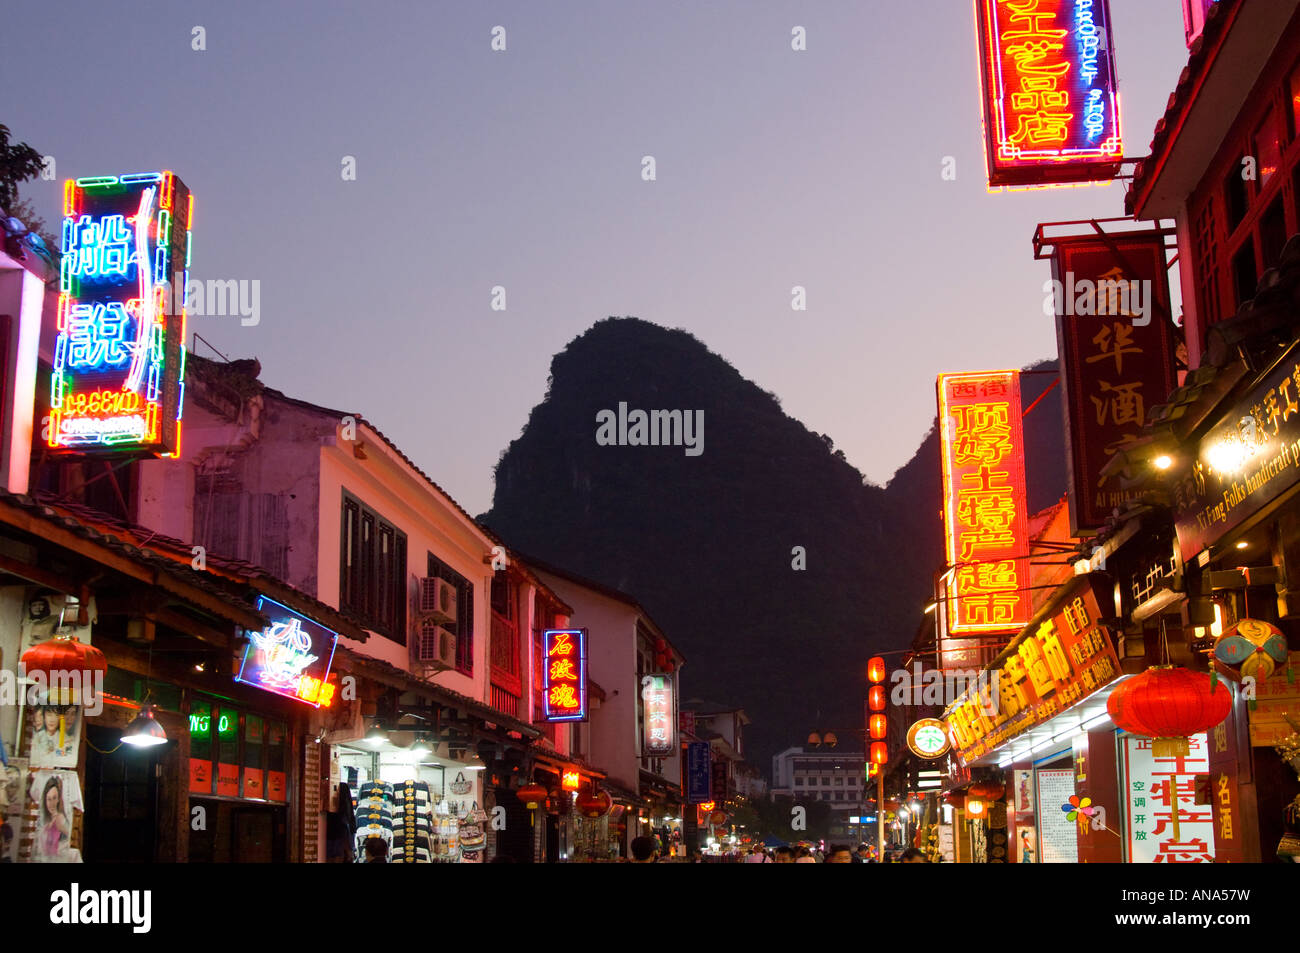 China Guangxi Yangshuo west street iluminado al anochecer con el típico pico de piedra caliza Foto de stock